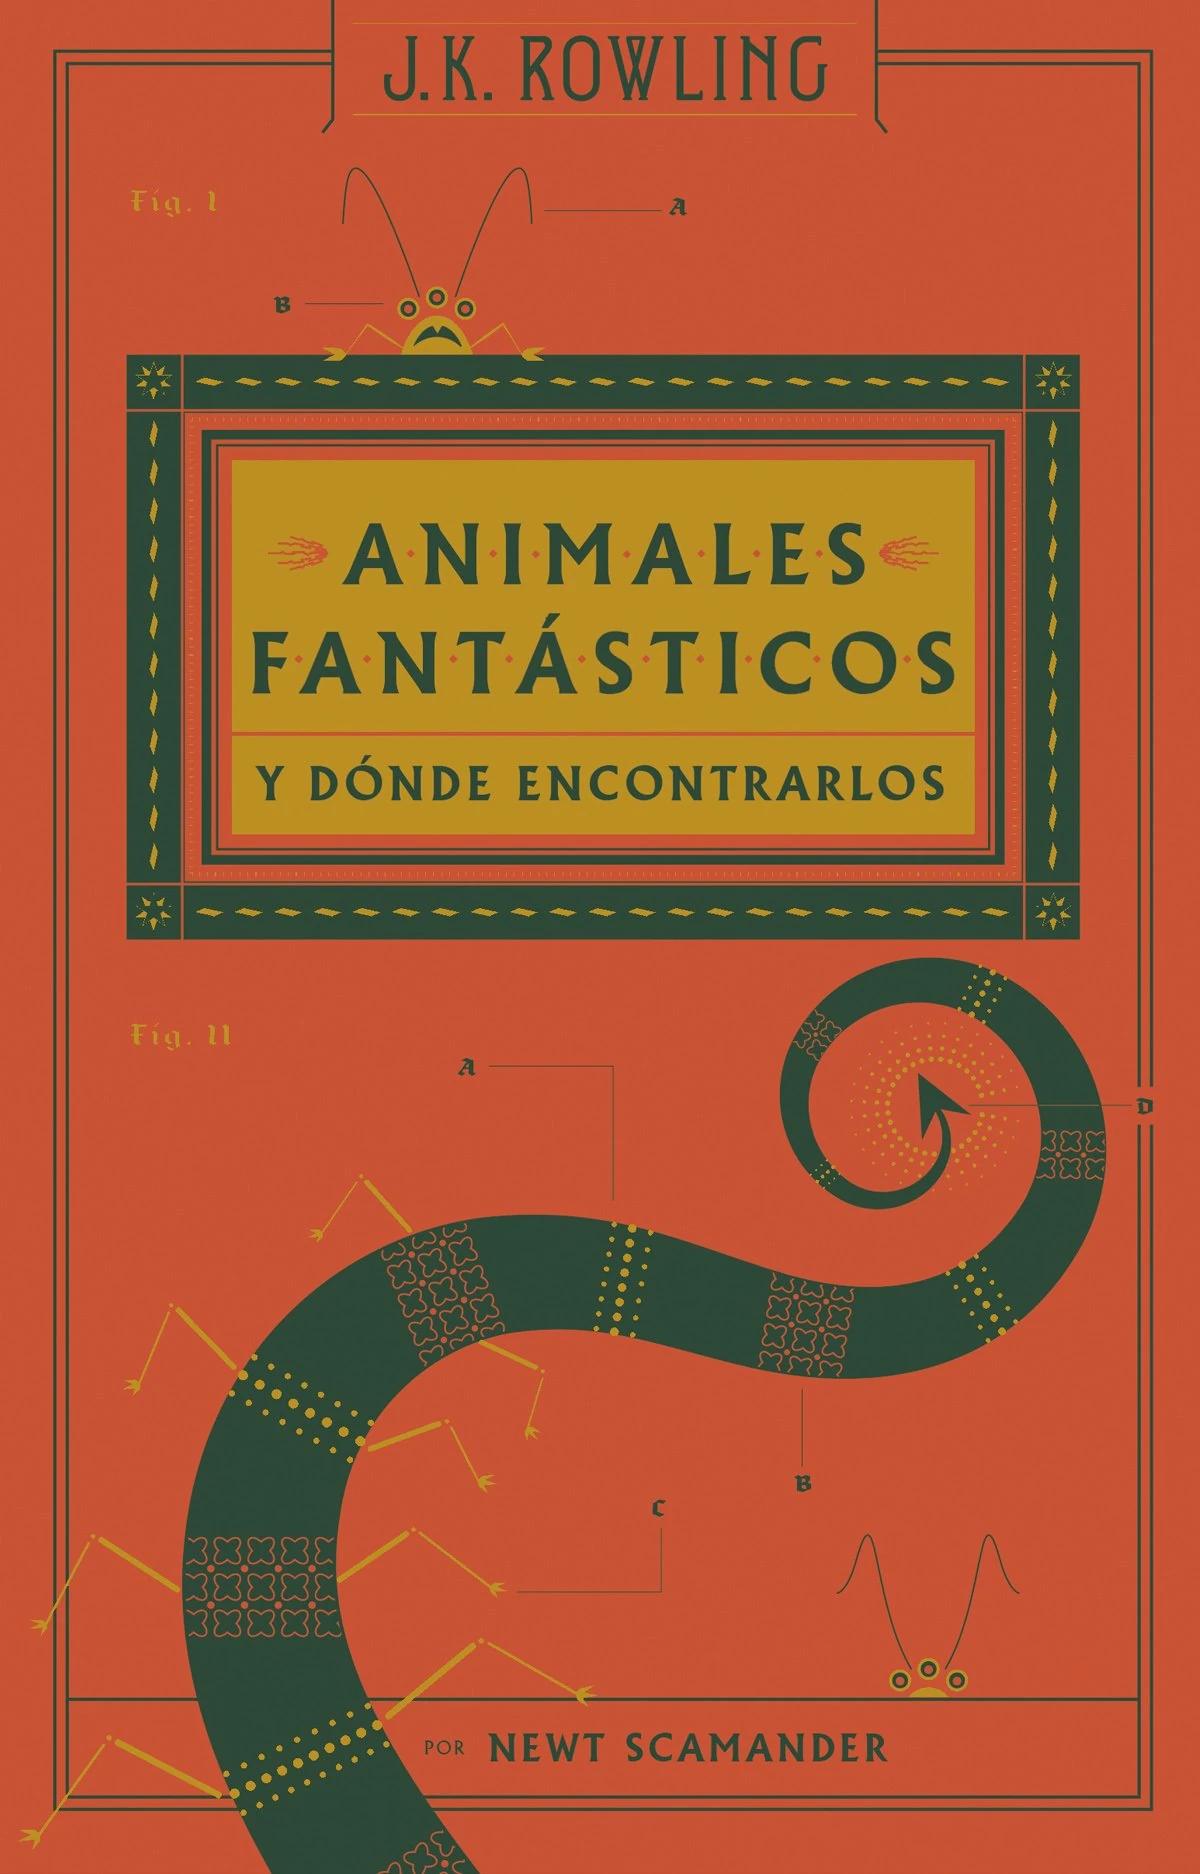 animales fantasticos y donde encontrarlos libro resumen - Cuántos libros son de Animales fantásticos y dónde encontrarlos